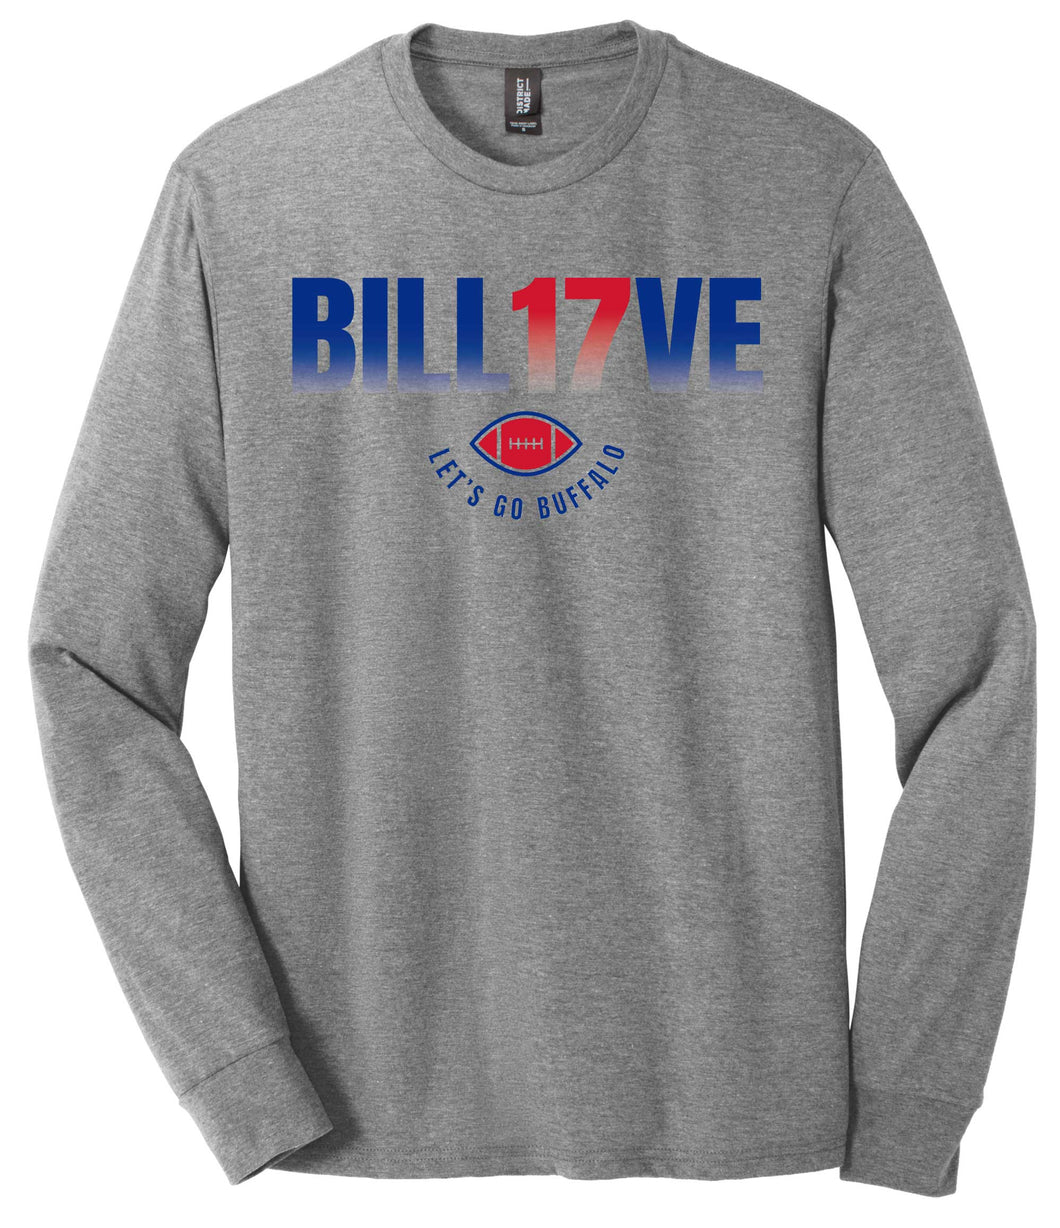 Bill17ve - Long Sleeve T-Shirt